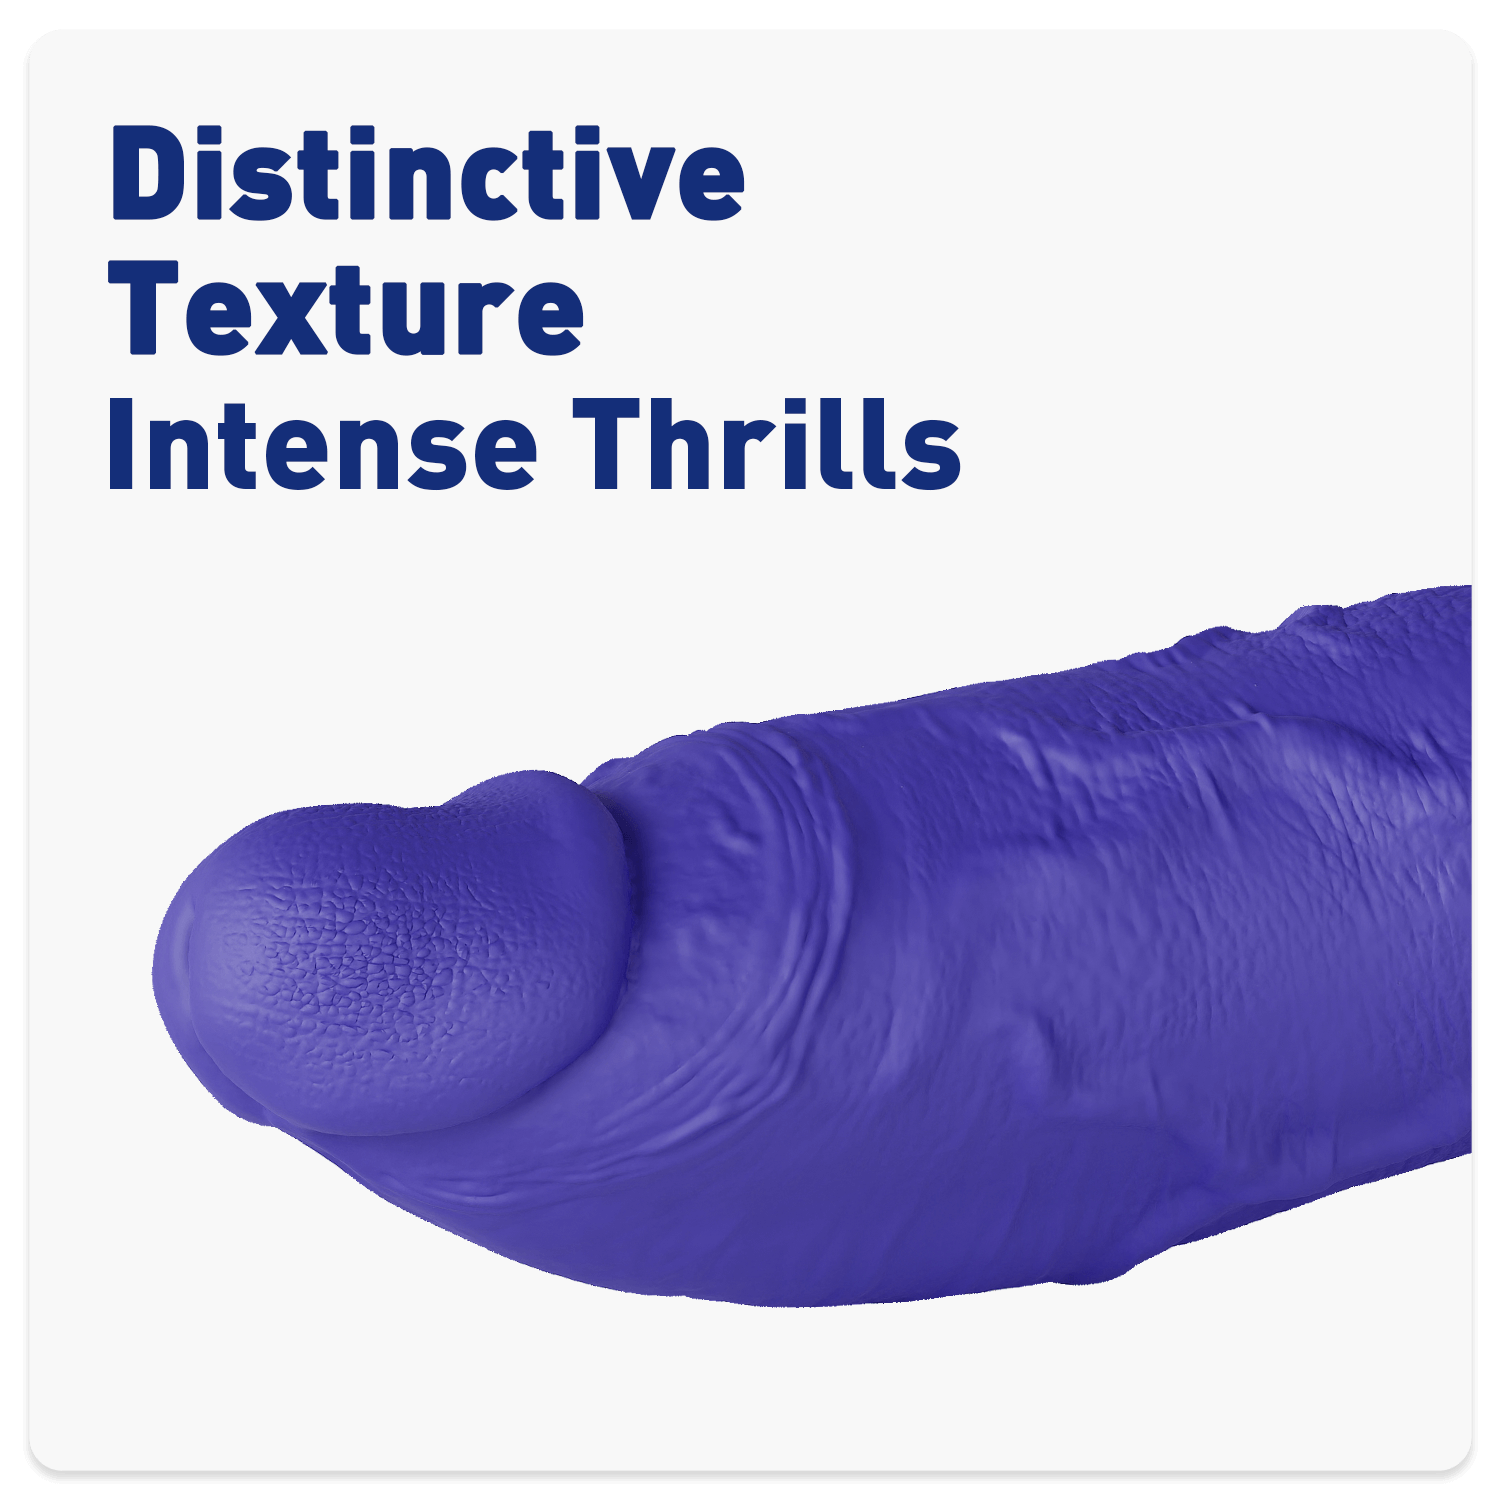 silicone-realistic-dildo-THE-THUG-DILDO-sex-toys